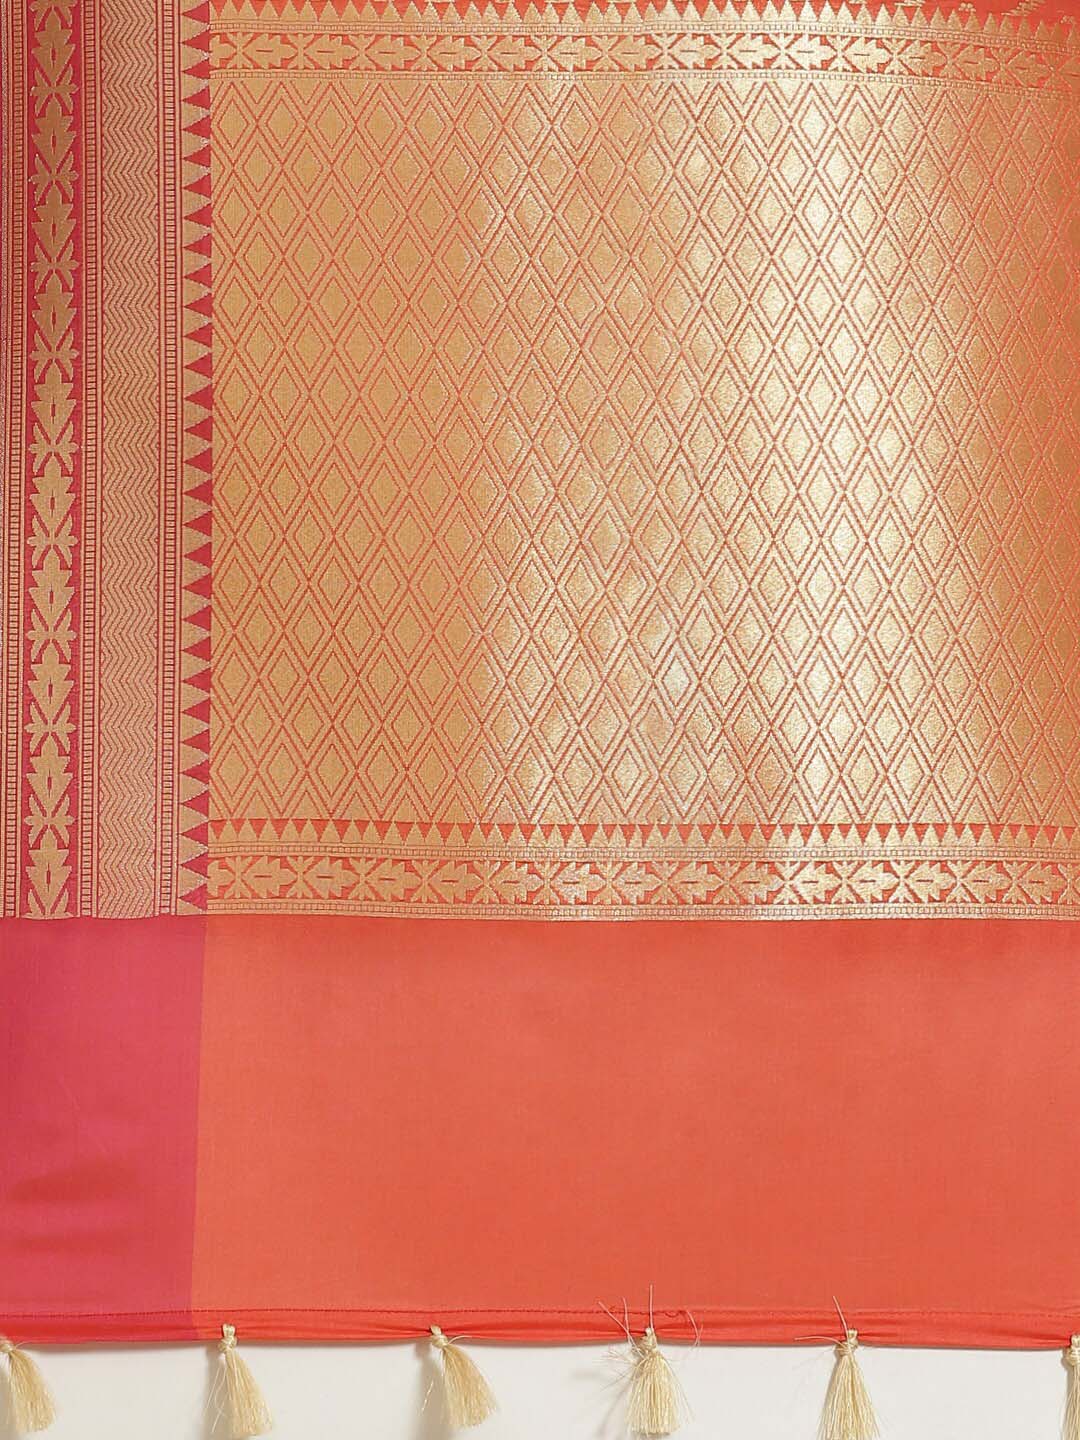 Indethnic Banarasi Rust Woven Design Party Wear Saree - Saree Detail View